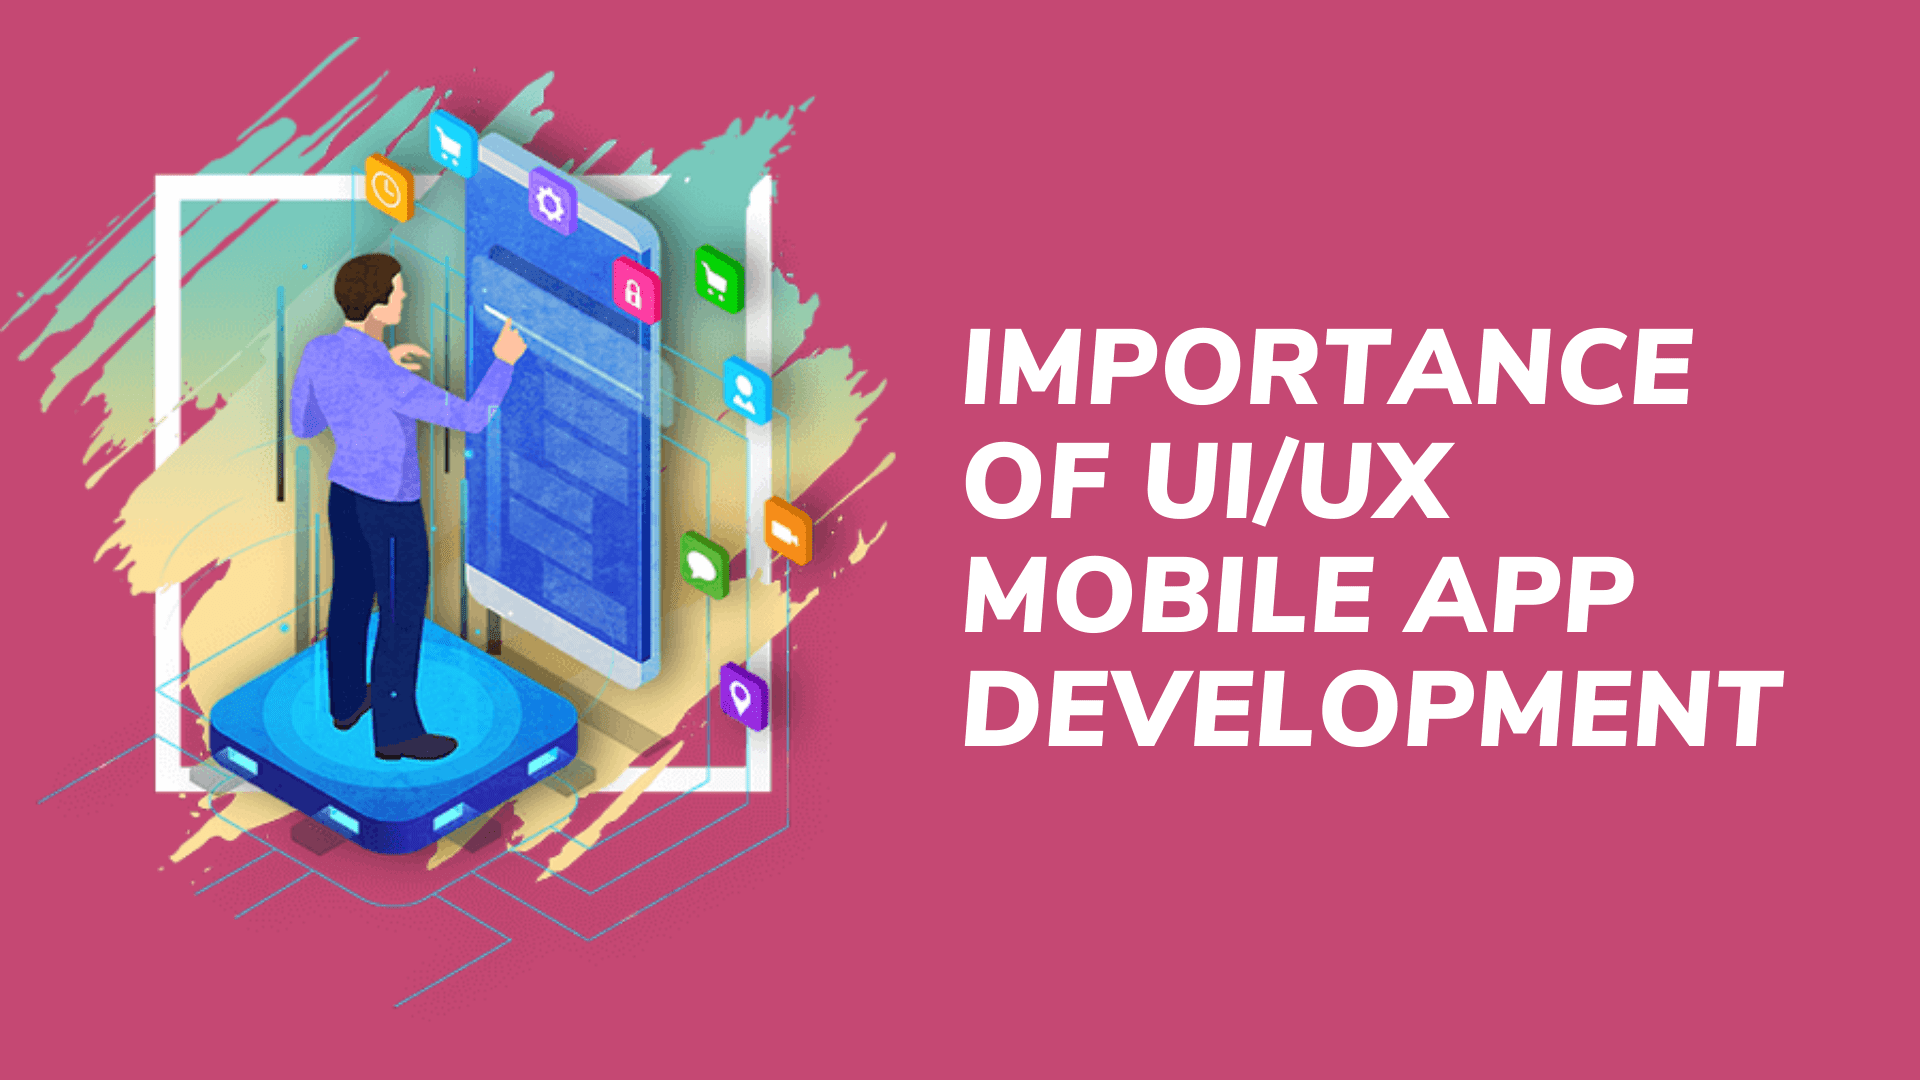 Importance of UIUX Mobile App Development